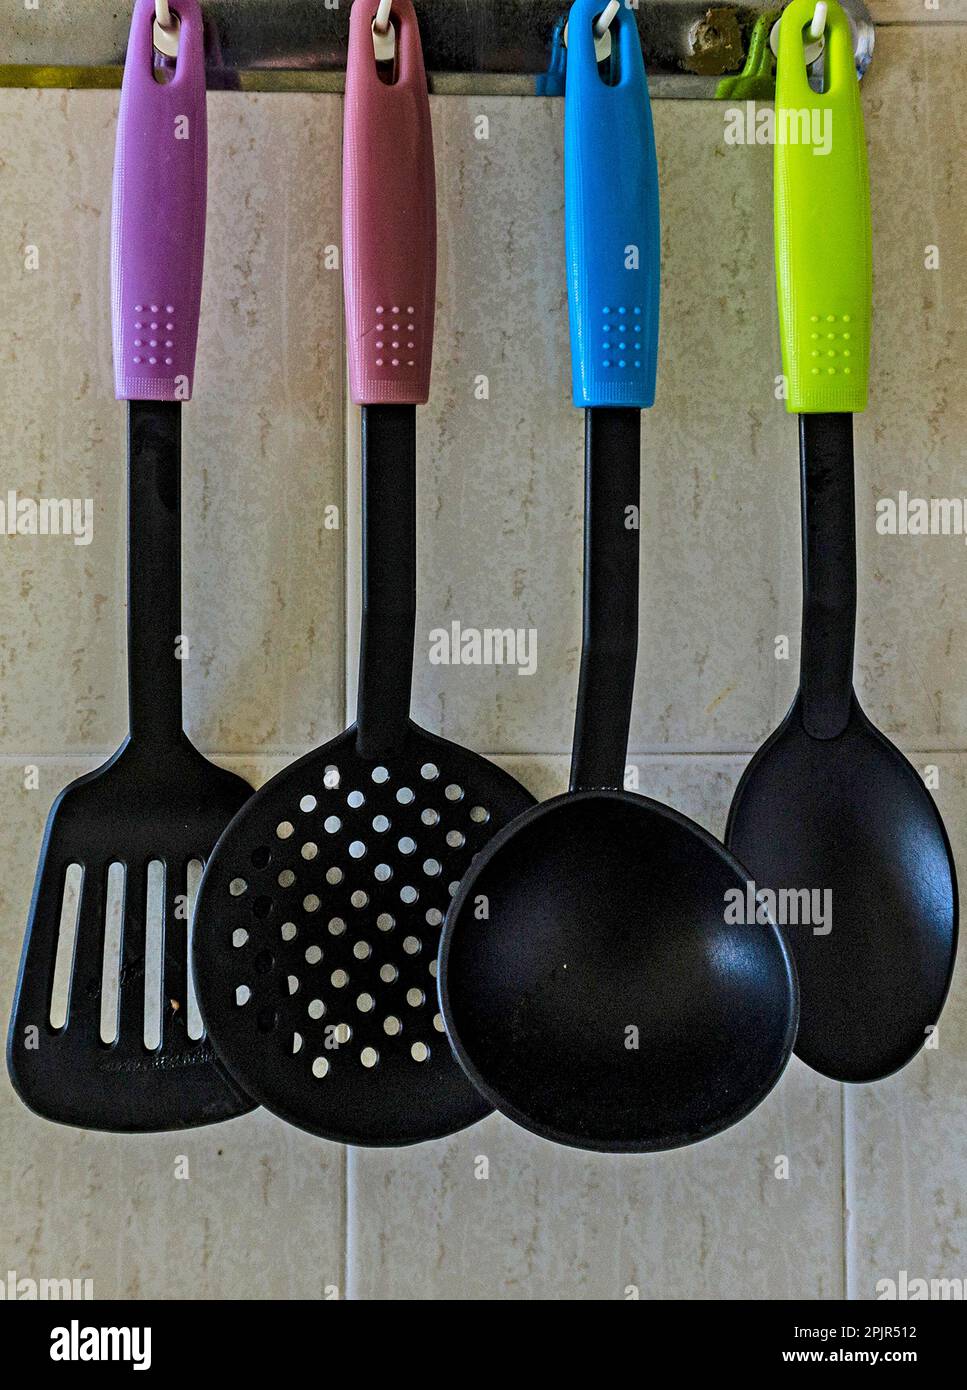 Quattro utensili da cucina colorati appesi su una parete della cucina. Foto Stock